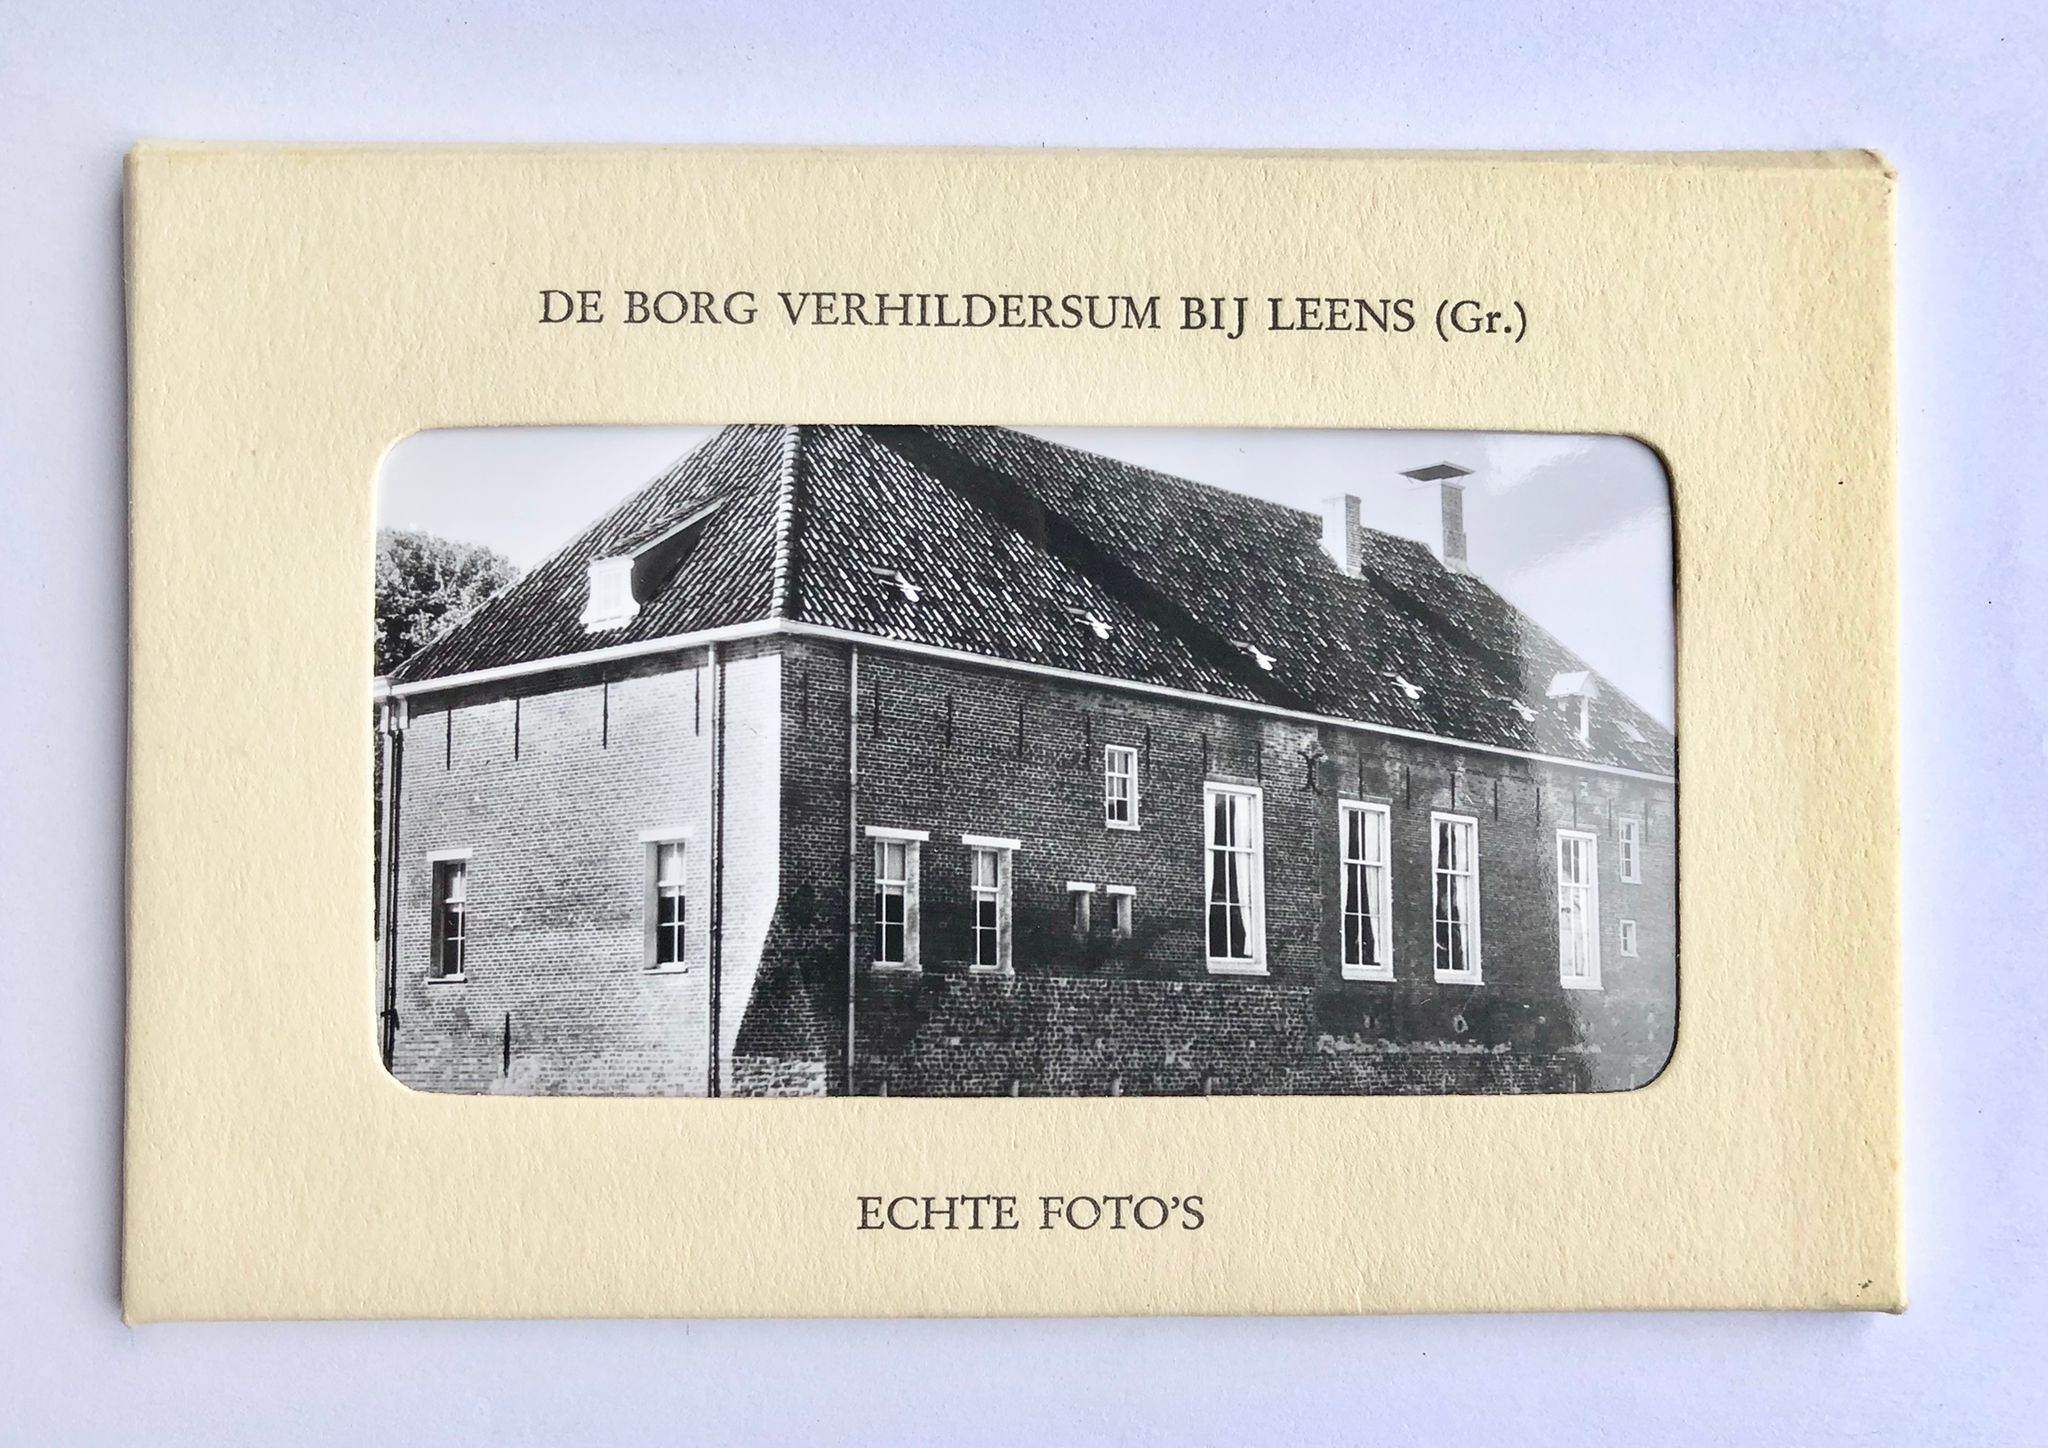 [Groningen, Potography] Brochure + Echte foto’s, De Borg Verhildersum bij Leens (Gr.), 9 foto’s.